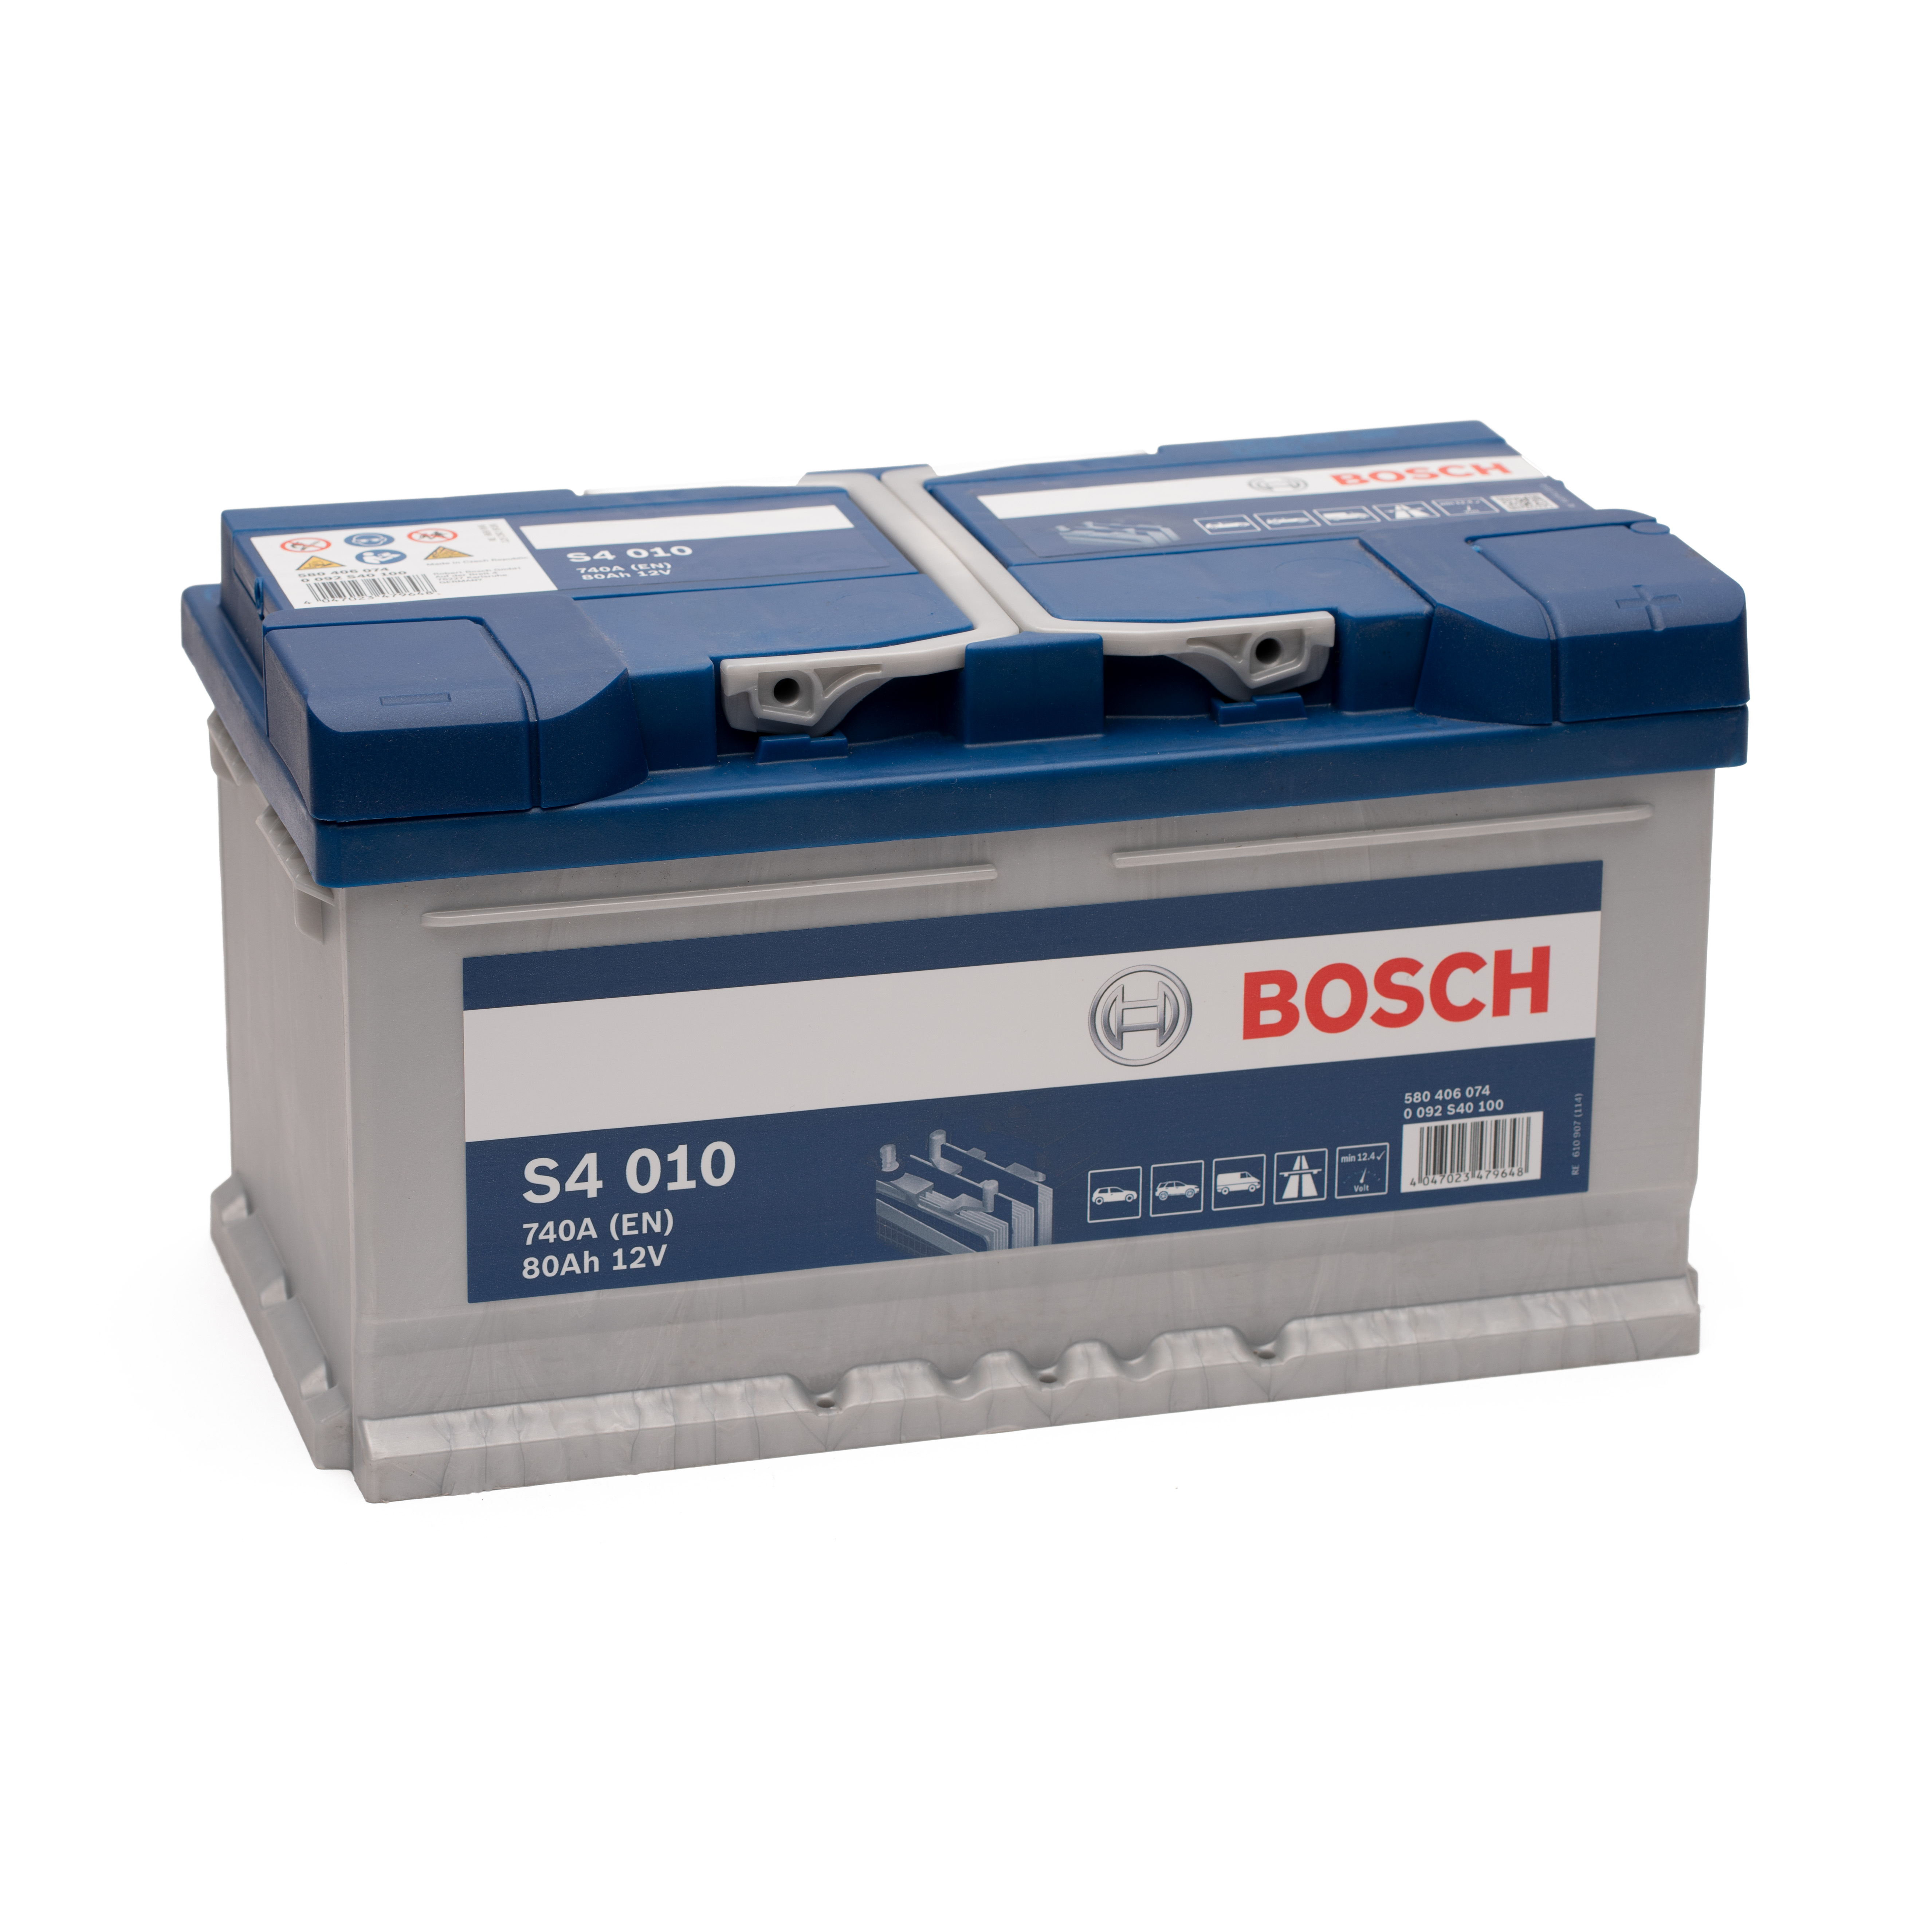 https://swissbatt24.ch/media/image/fd/20/8f/Bosch-S4-010-80Ah-Autobatterie-580406074.jpg